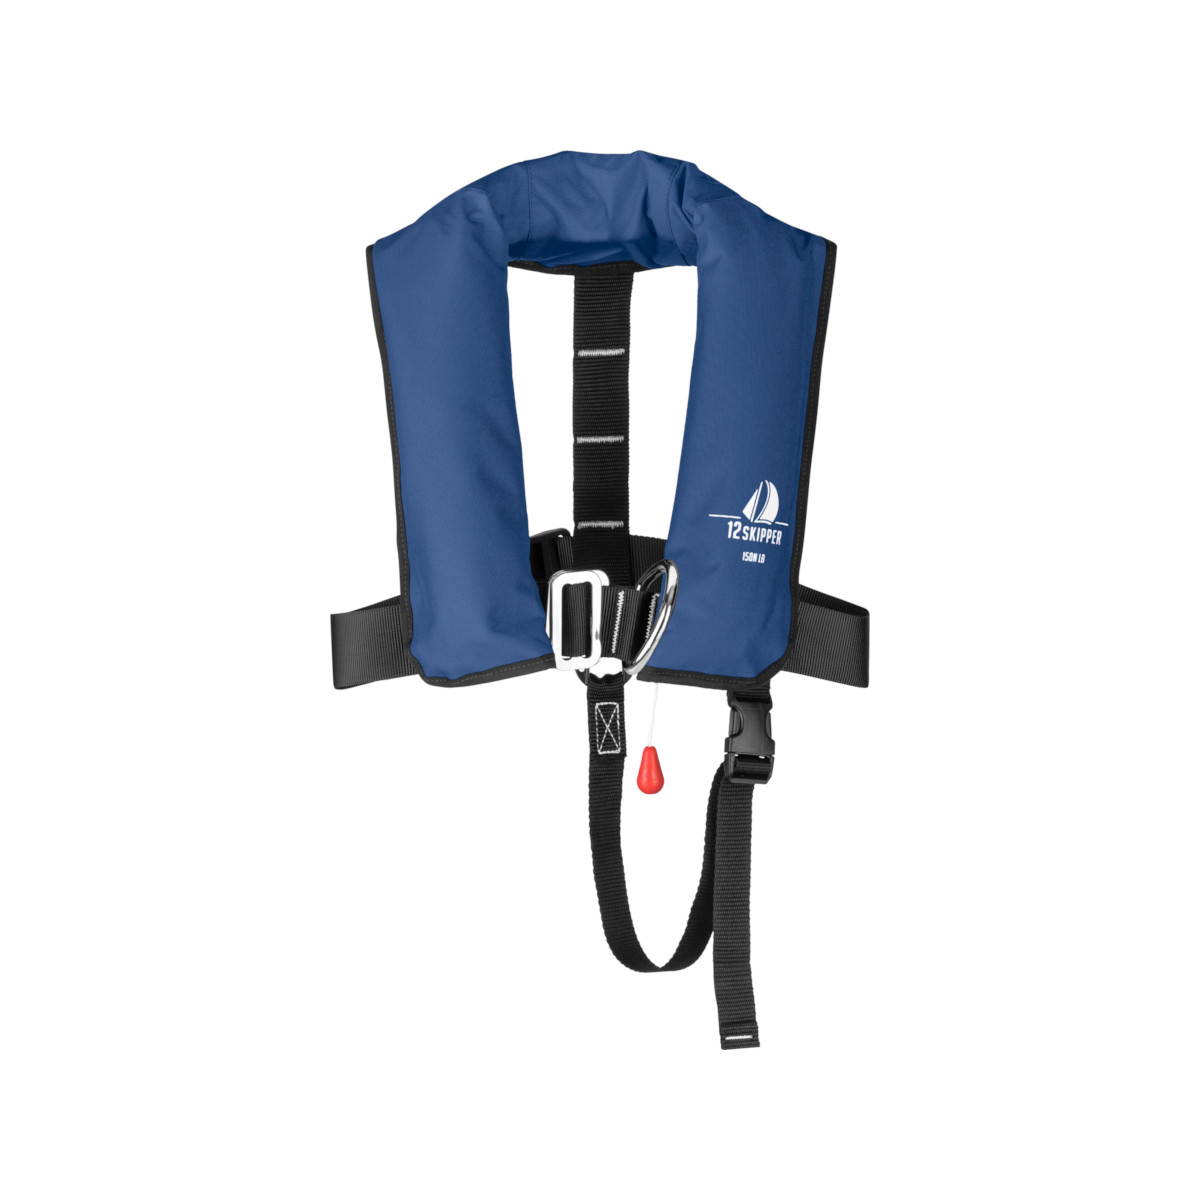 12skipper gilet automatico per bambini 150N ISO con imbragatura, blu navy